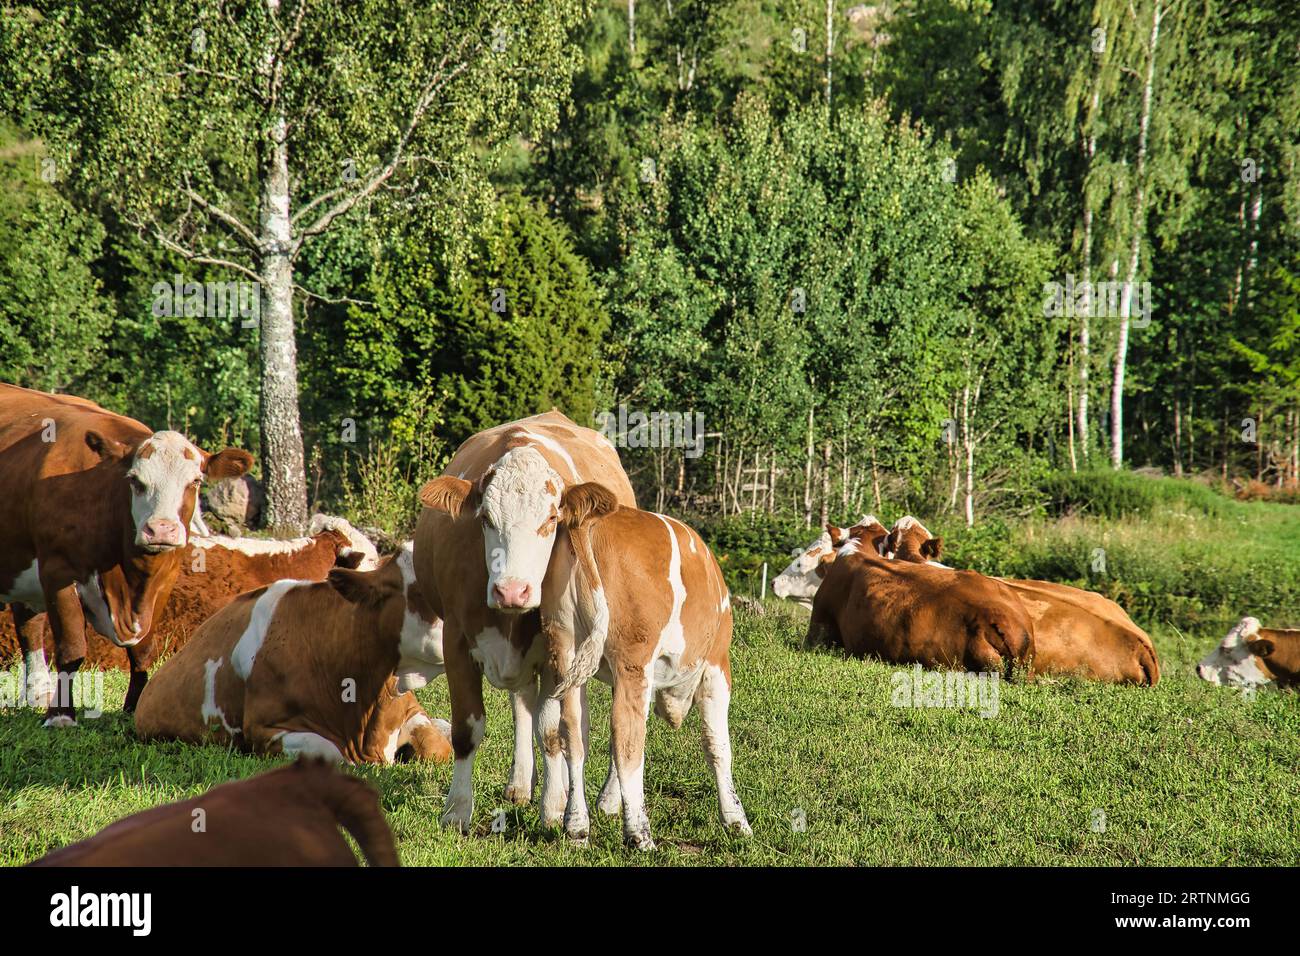 Vitello con mucca madre in arrivo. Il giovane animale beve alla madre. Foto di un animale da fattoria dalla Scandinavia Foto Stock